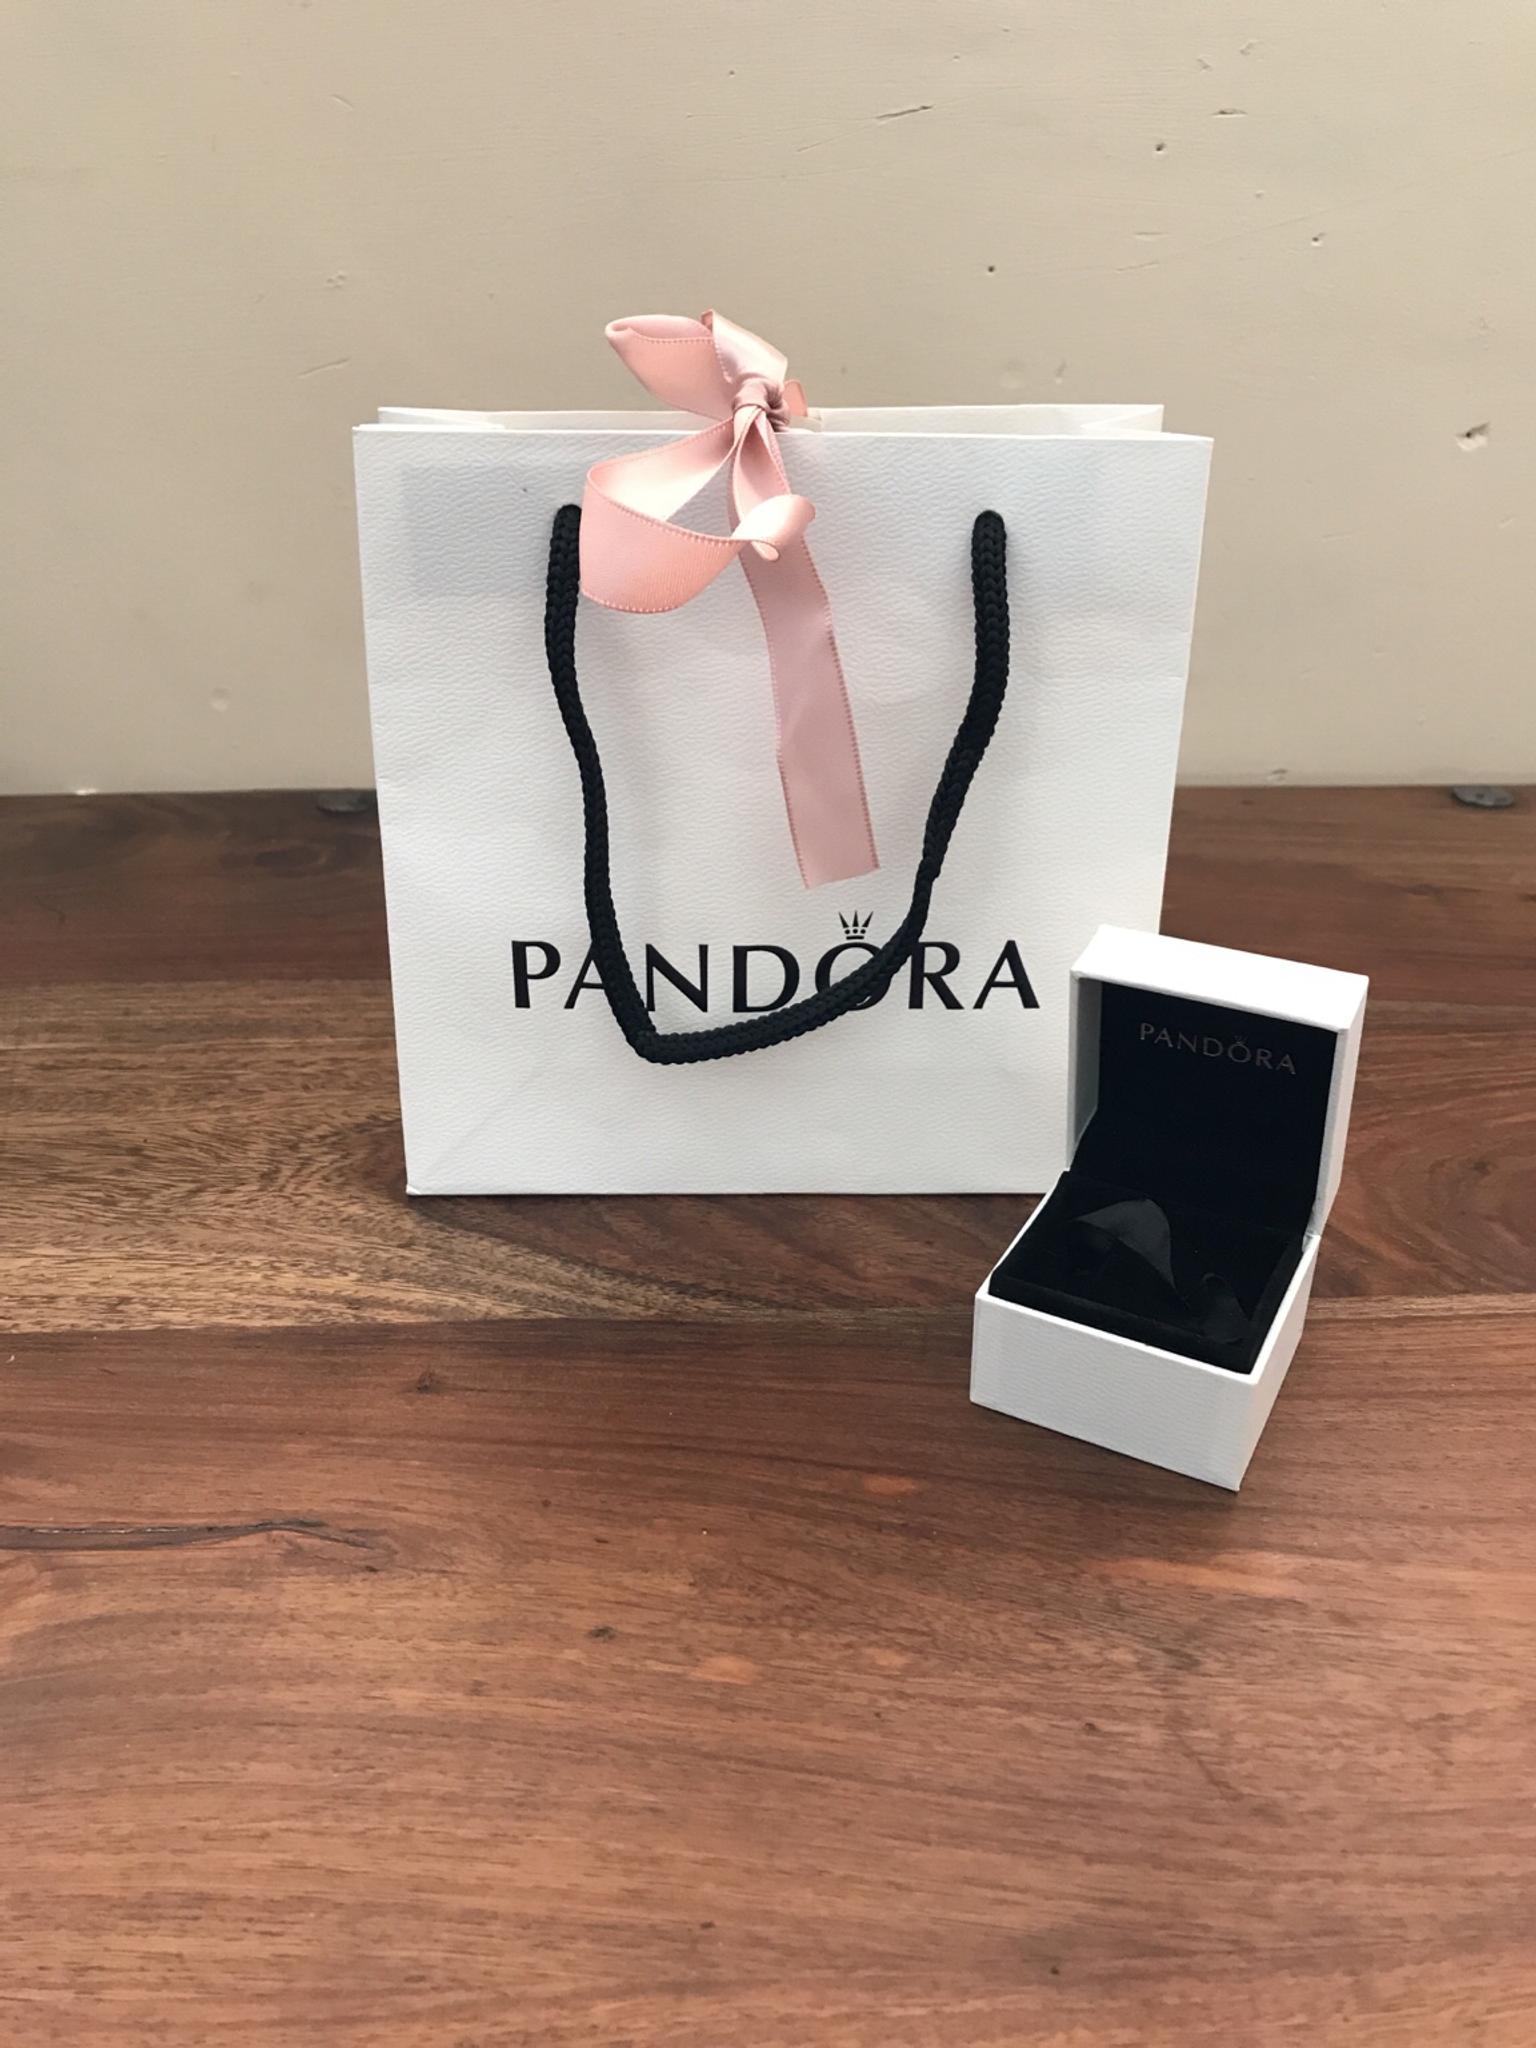 pandora charm box and gift bag